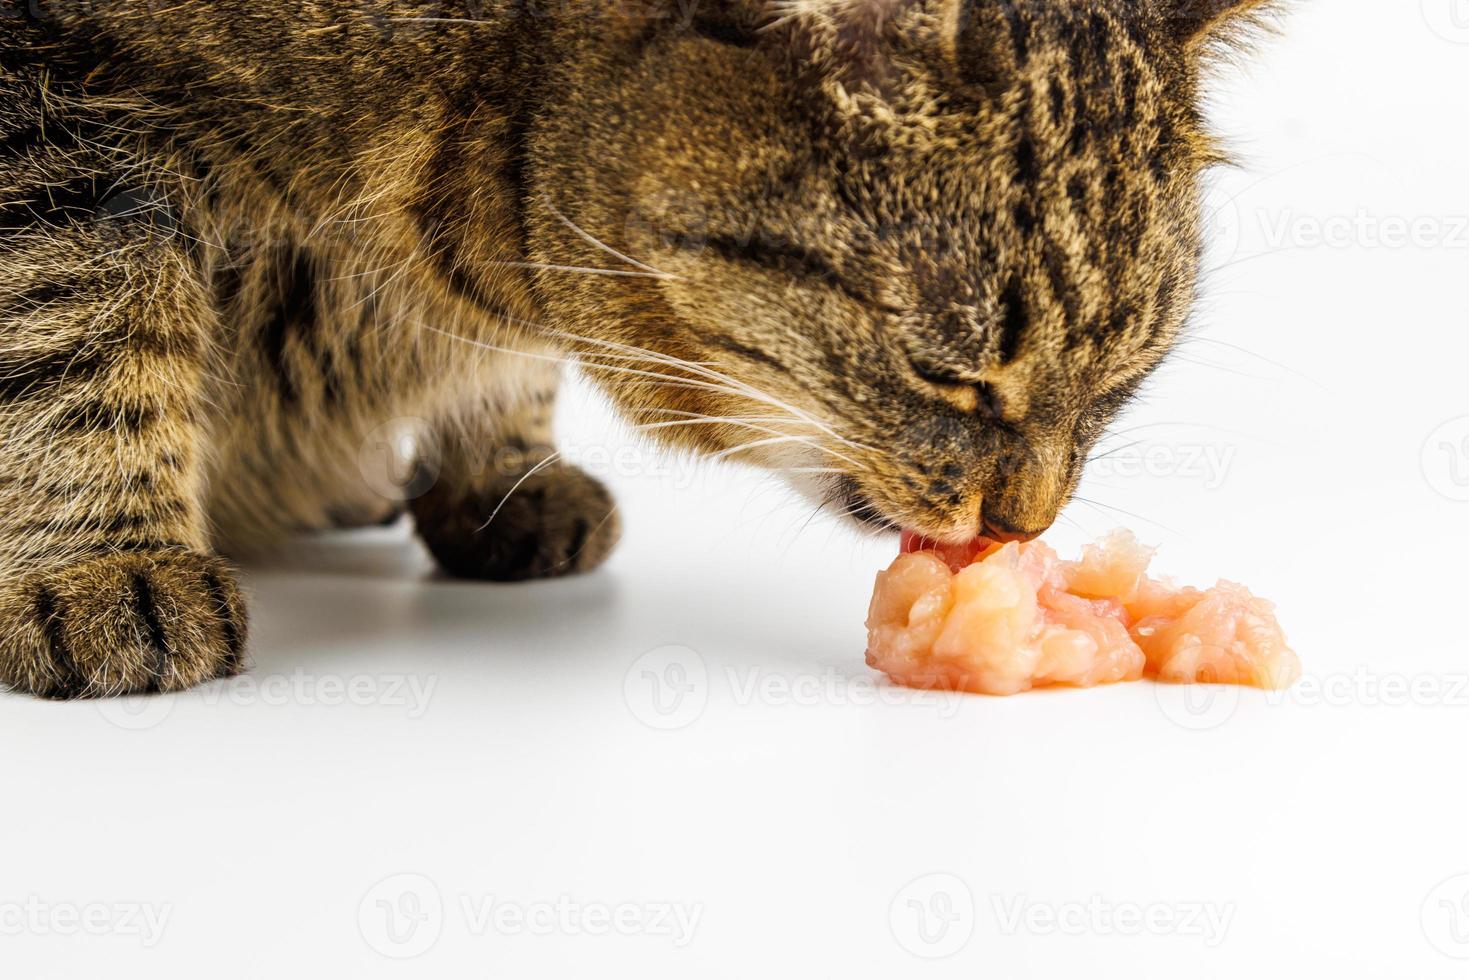 tabby katt äter rå kyckling kött på vit bakgrund foto